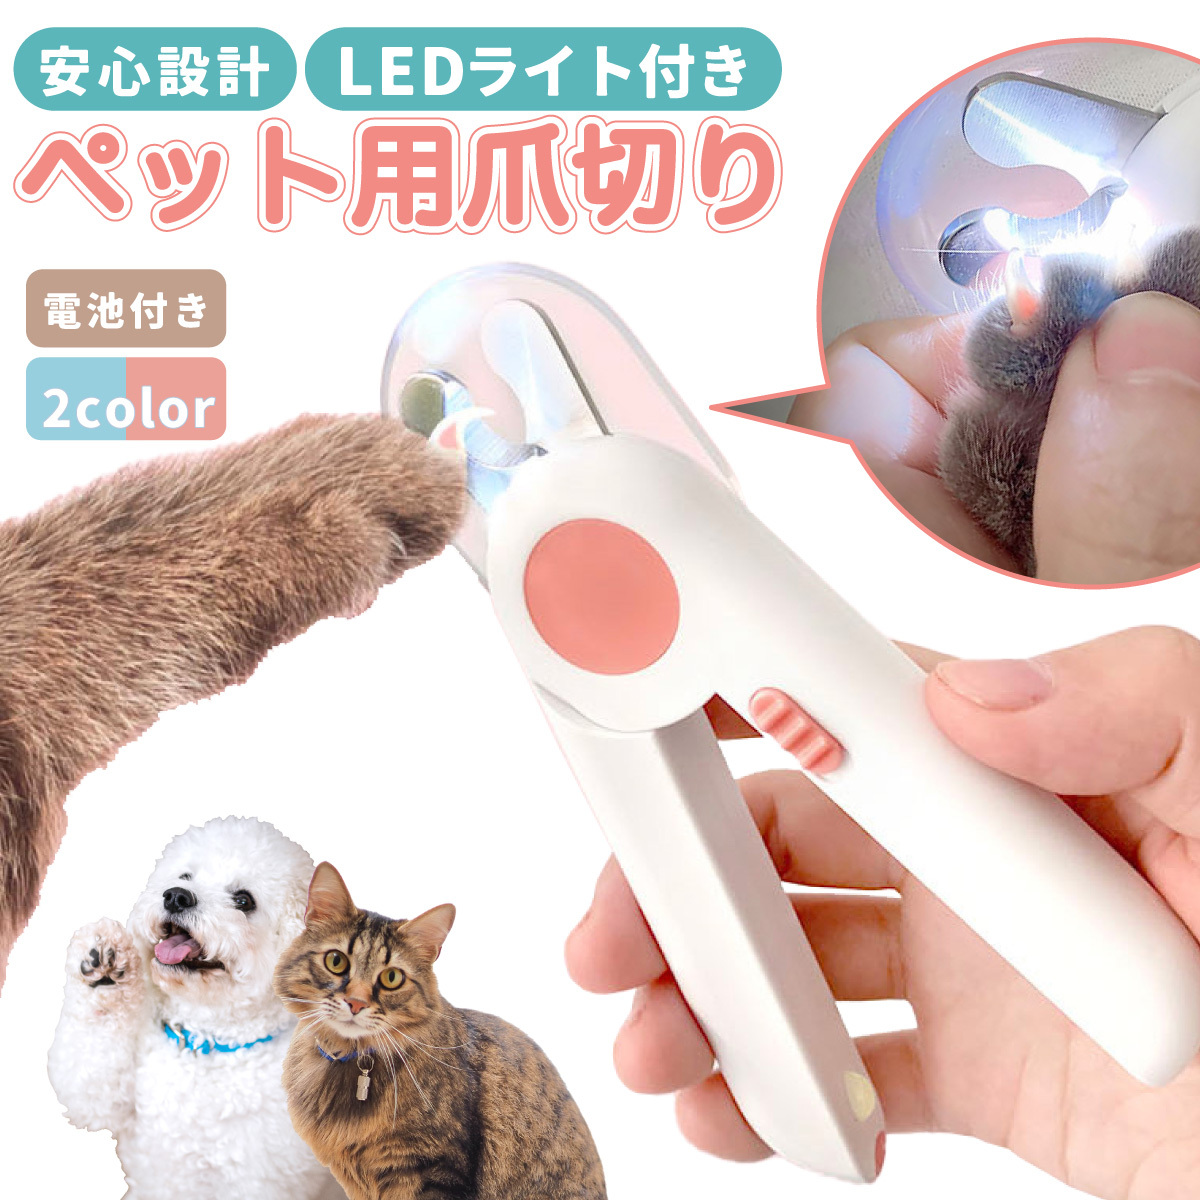 ペット爪切り LEDライト付き つめ切り 爪切り 高輝度LEDライト付き ネイルトリマー 犬猫爪切り 中小型犬